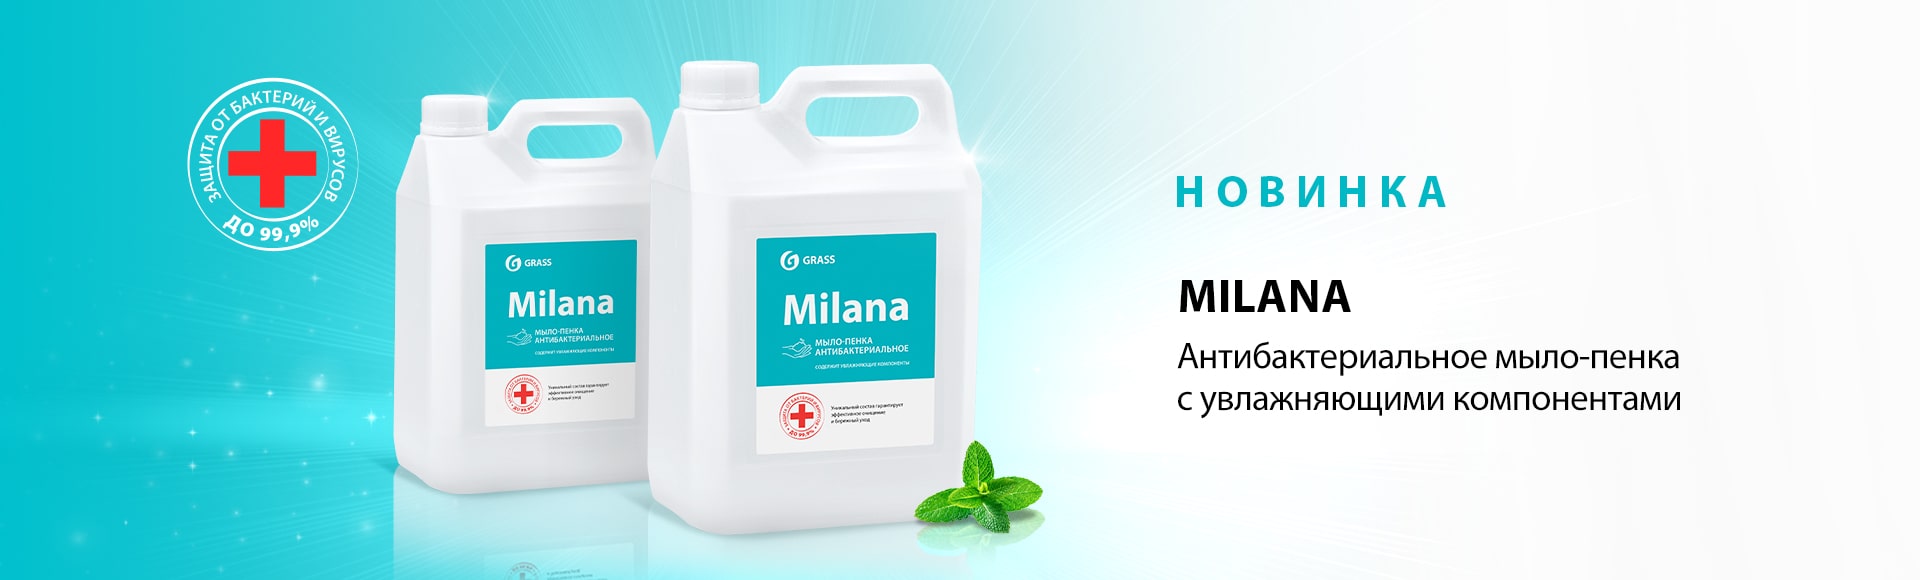 Антибактериальное мыло-пенка Milana